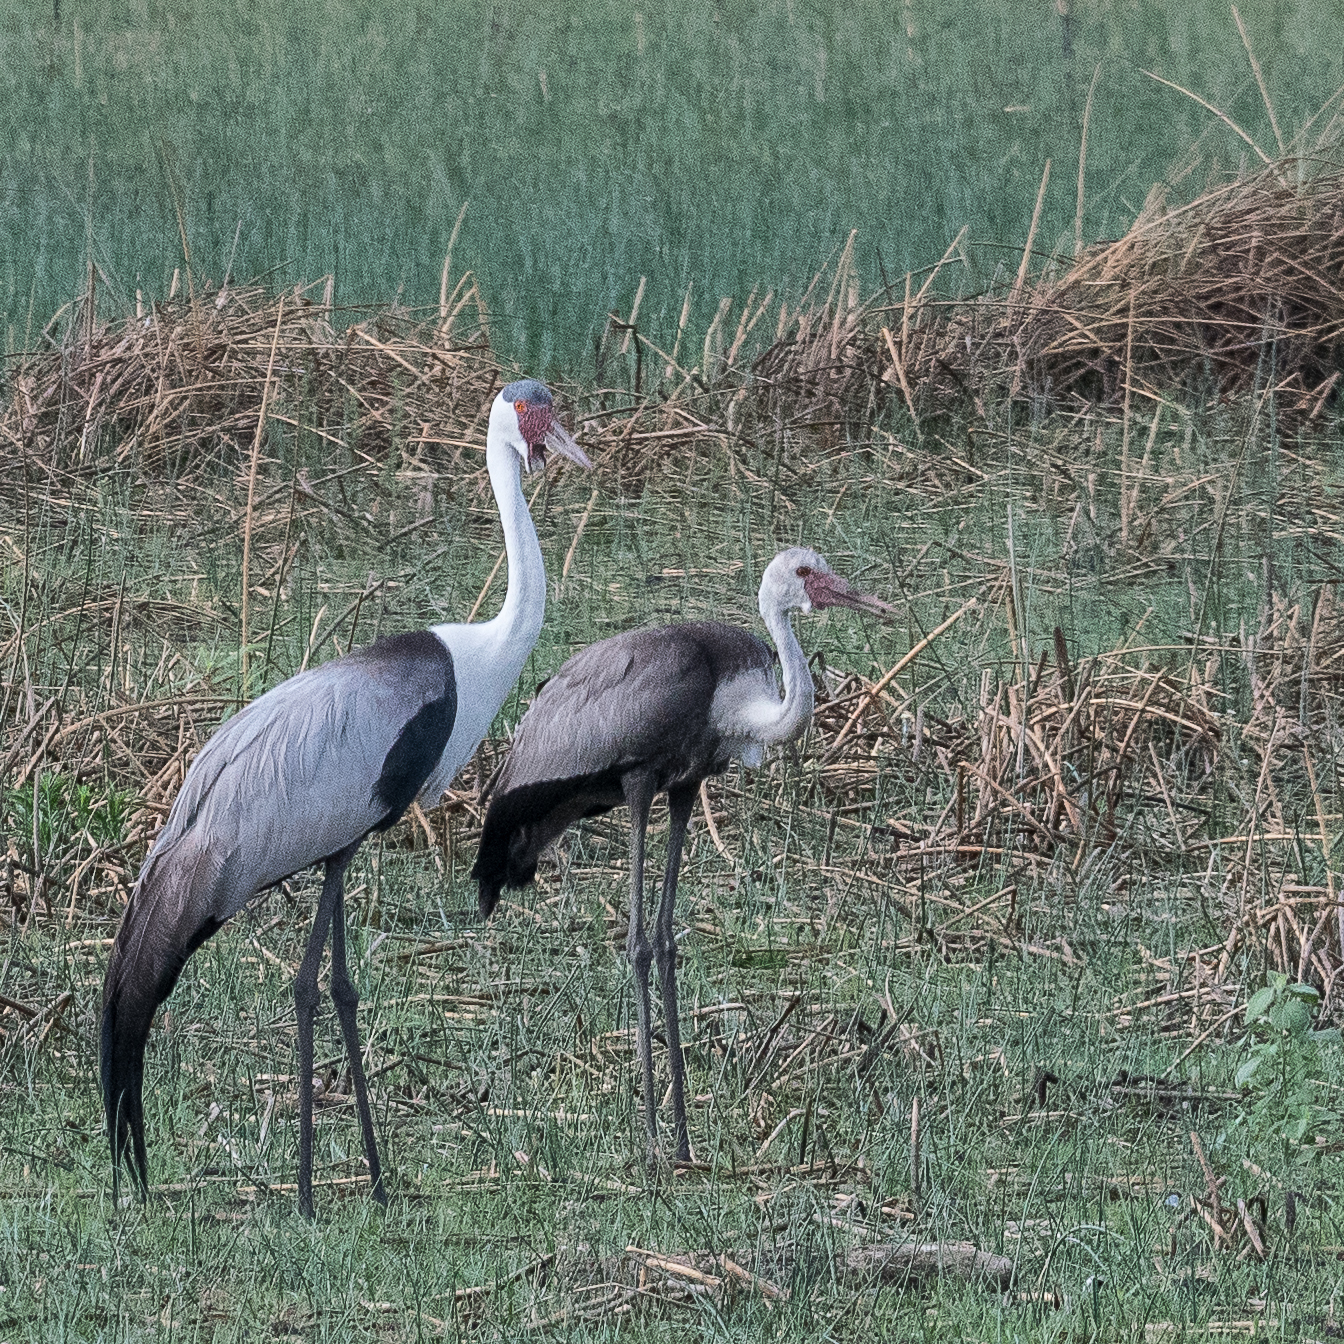 Grues caronculées (Wattled cranes, Grus carunculata), adulte et juvènile, Kwando reserve, Delta de l'Okavango, Botswana.